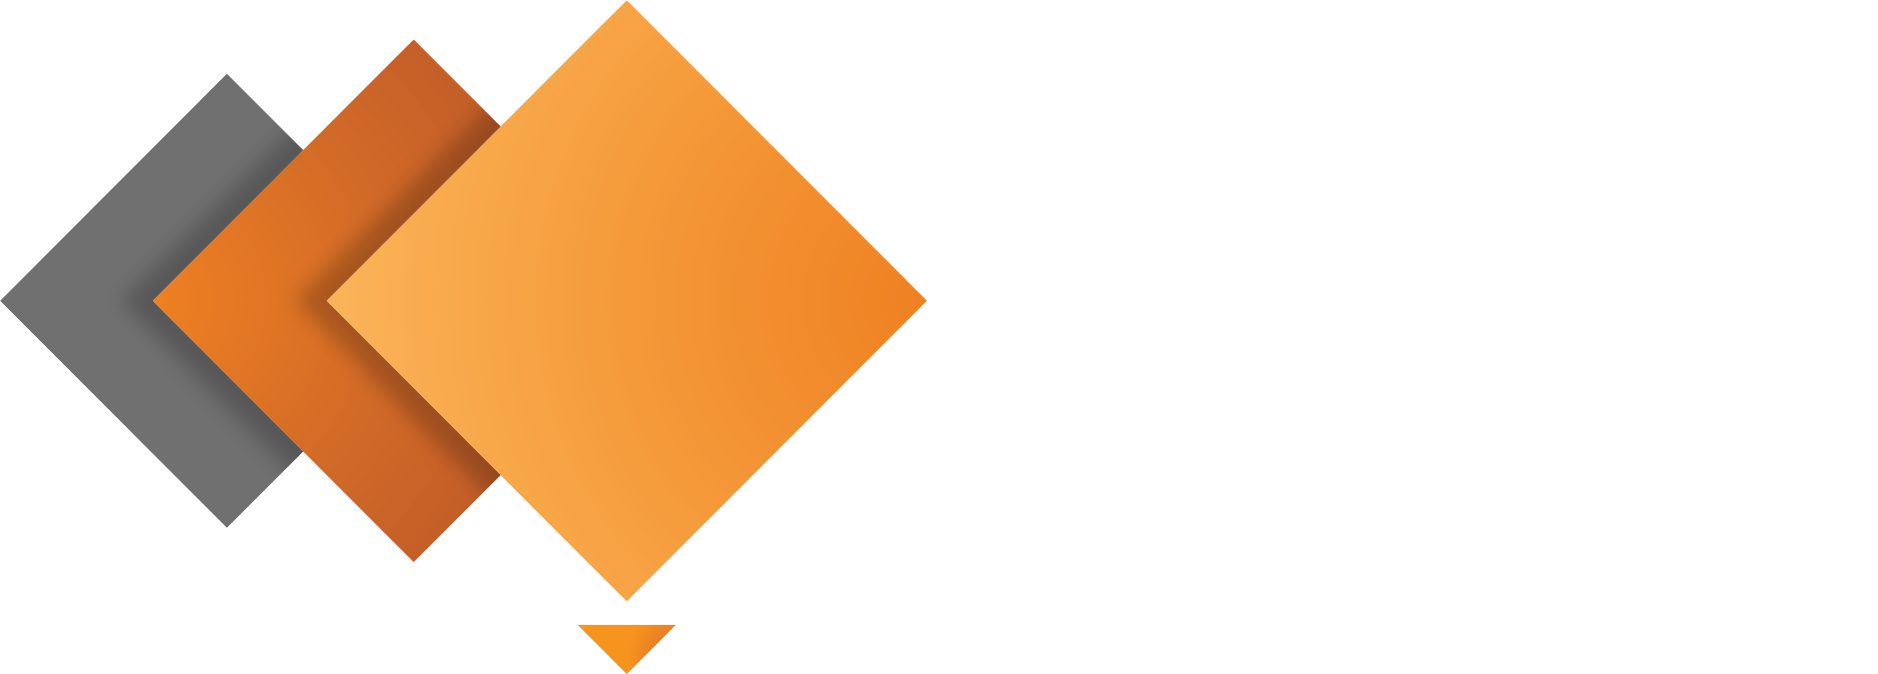 blockchainAustralia